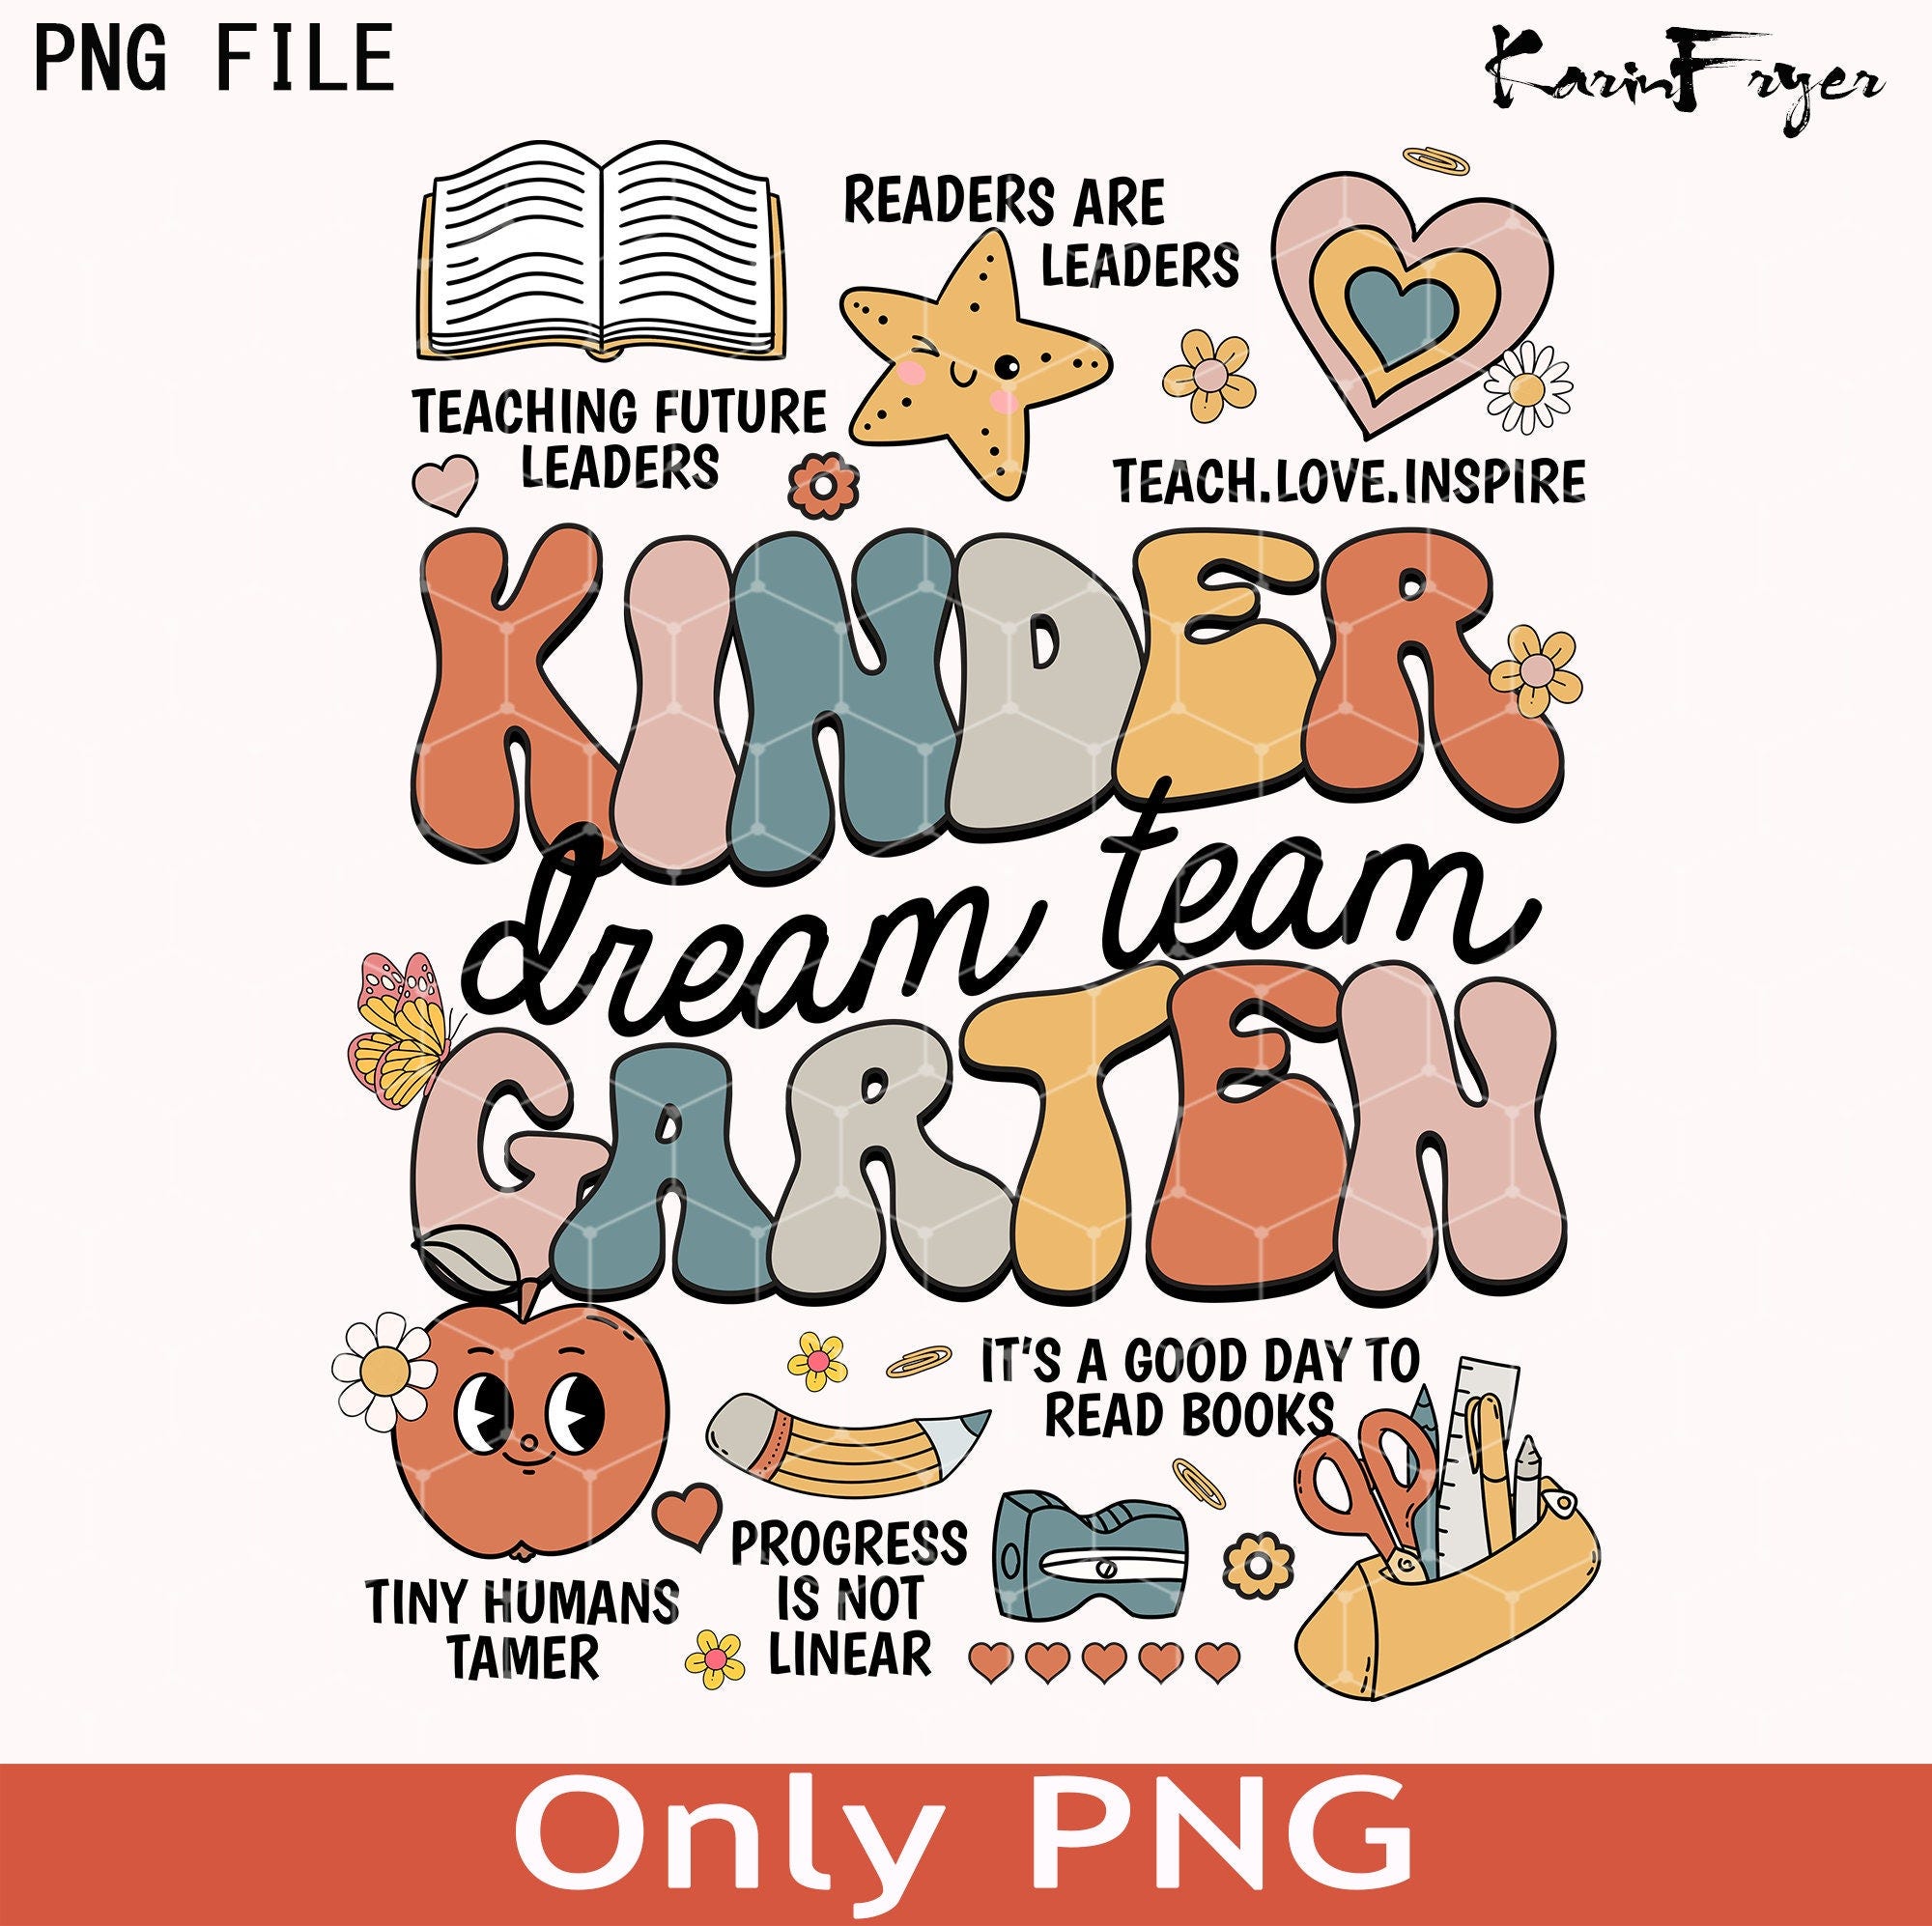 Kindergarten Teacher Png, Kindergarten Dream Team Png, Teacher Team Png, Kindergarten Png, Teach Love Inspire Png, Last Day of School Png